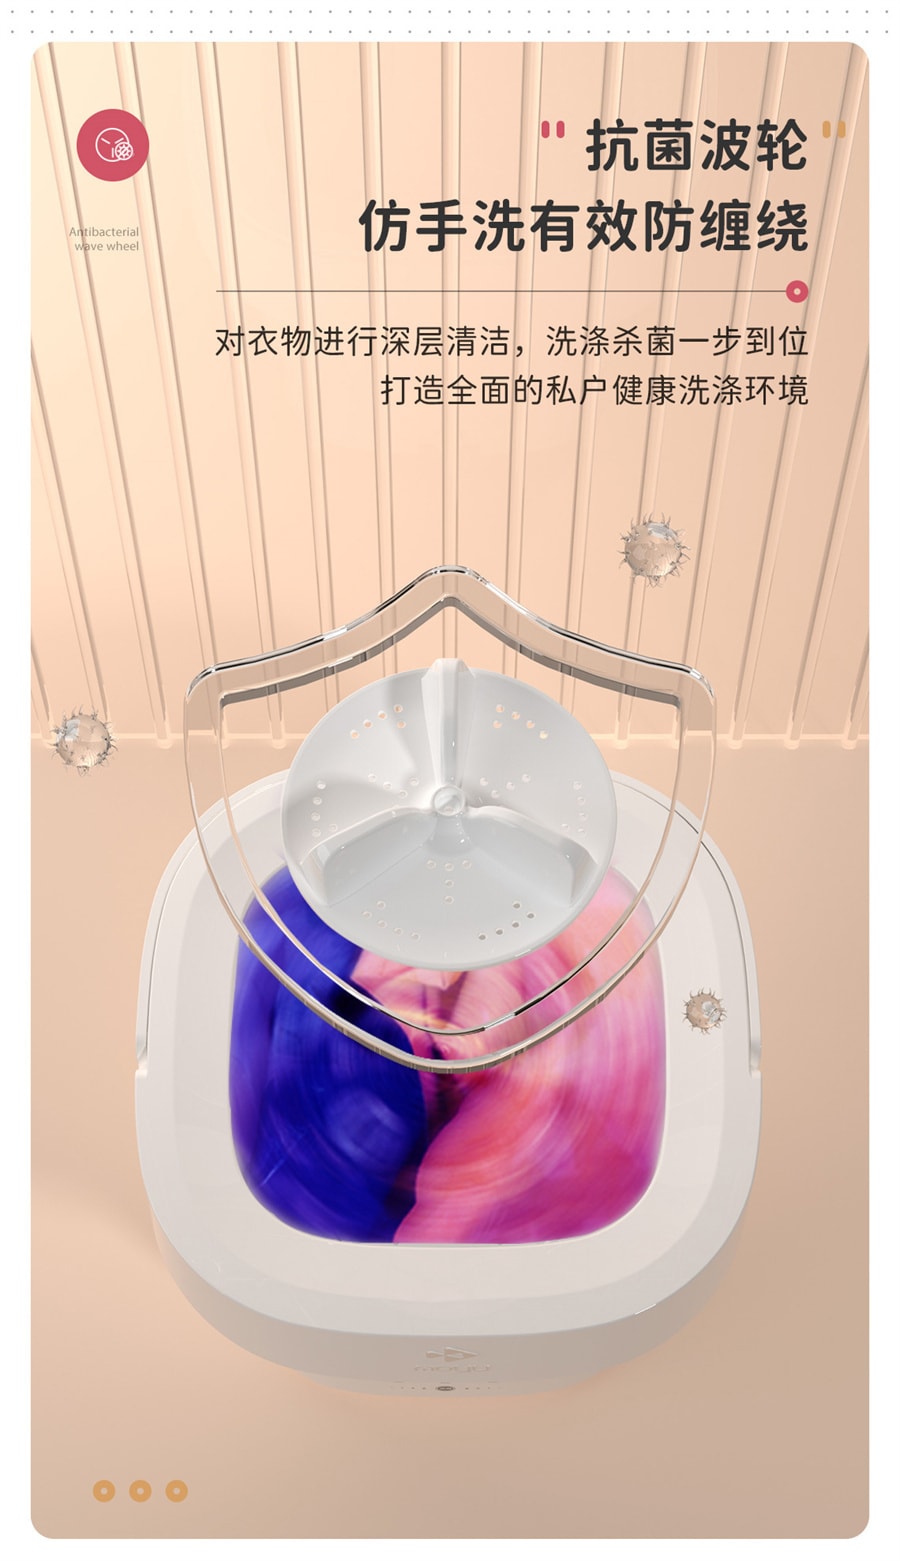 【美國極速出貨】摩魚 迷你摺疊洗衣機 小型便攜內褲清洗機 MINI01-S甜甜圈 美規版